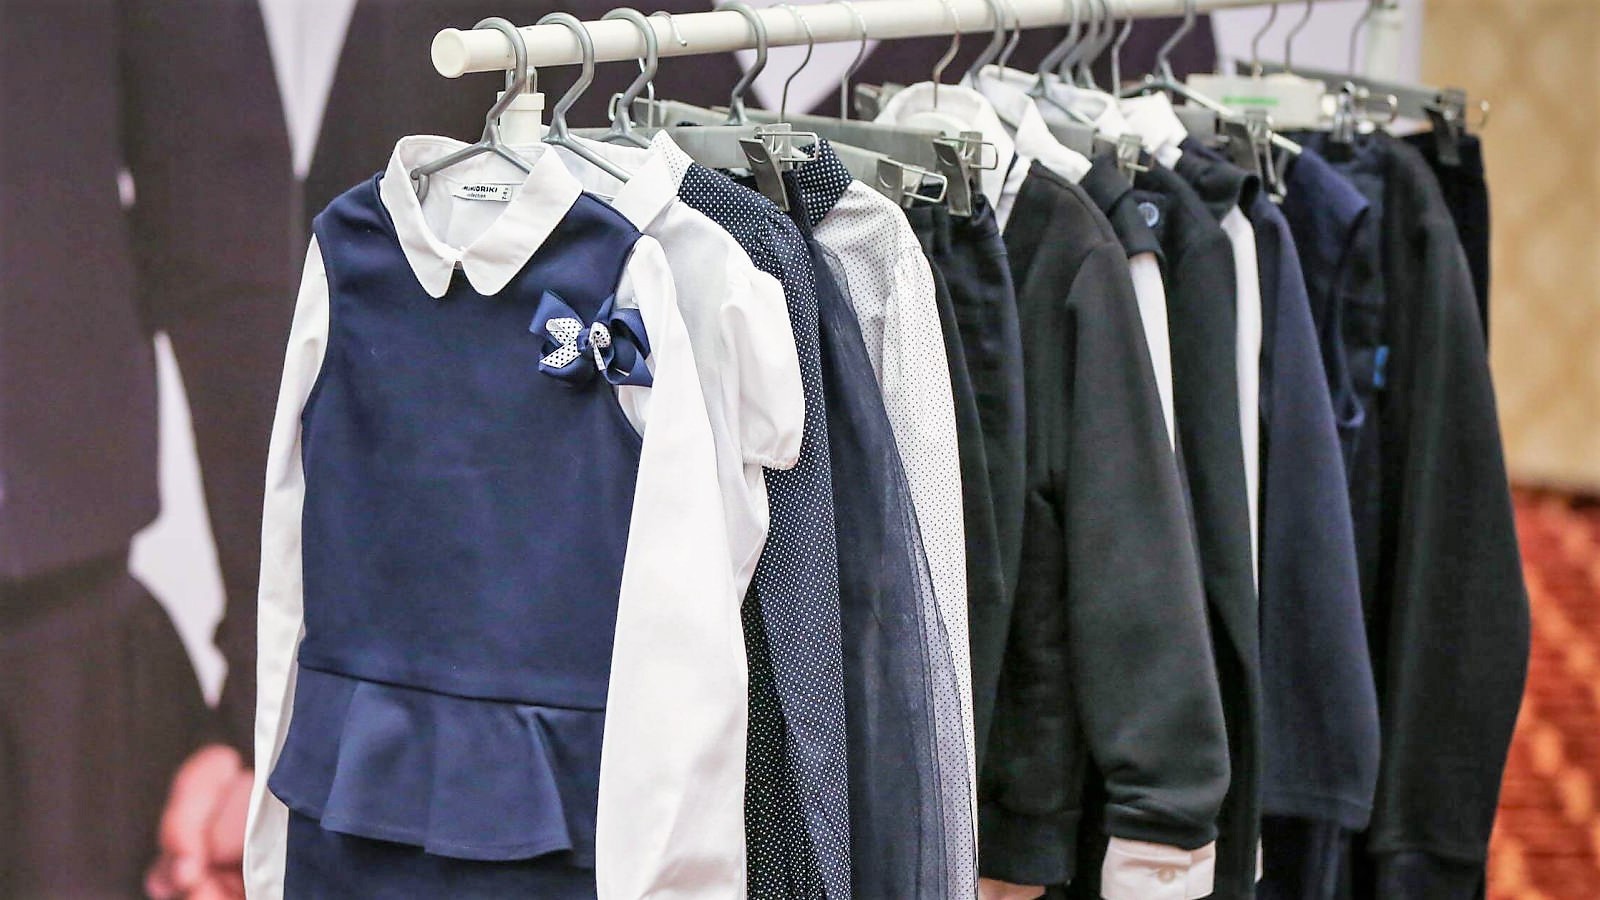 Школьная форма — повседневная униформа для учеников во время их нахождения в школе и на официальных школьных мероприятиях вне школы.